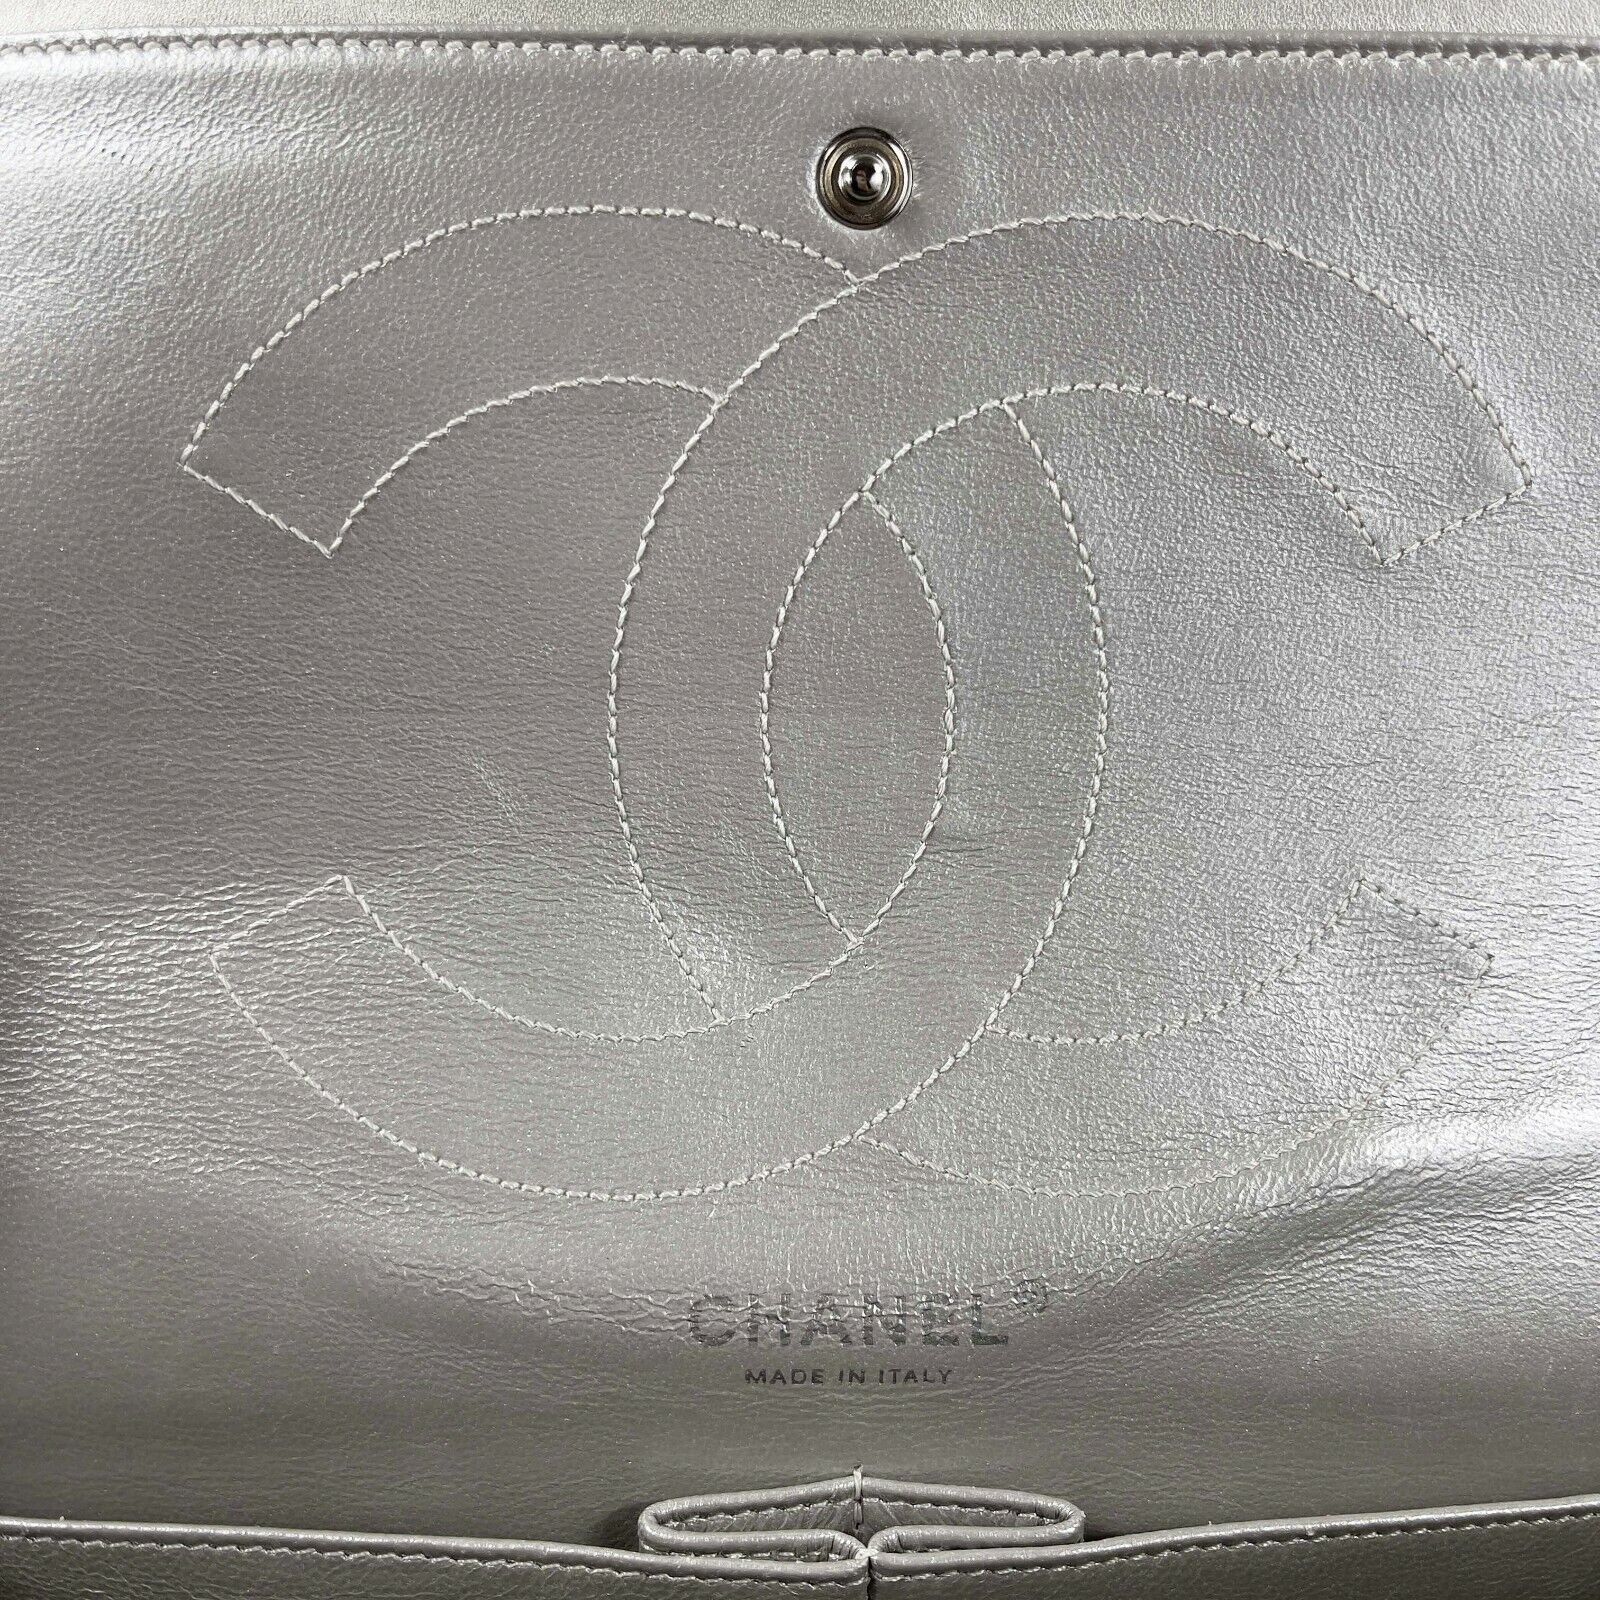 Chanel 2.55 Reissue 227 Double Flap Shoulder Bag